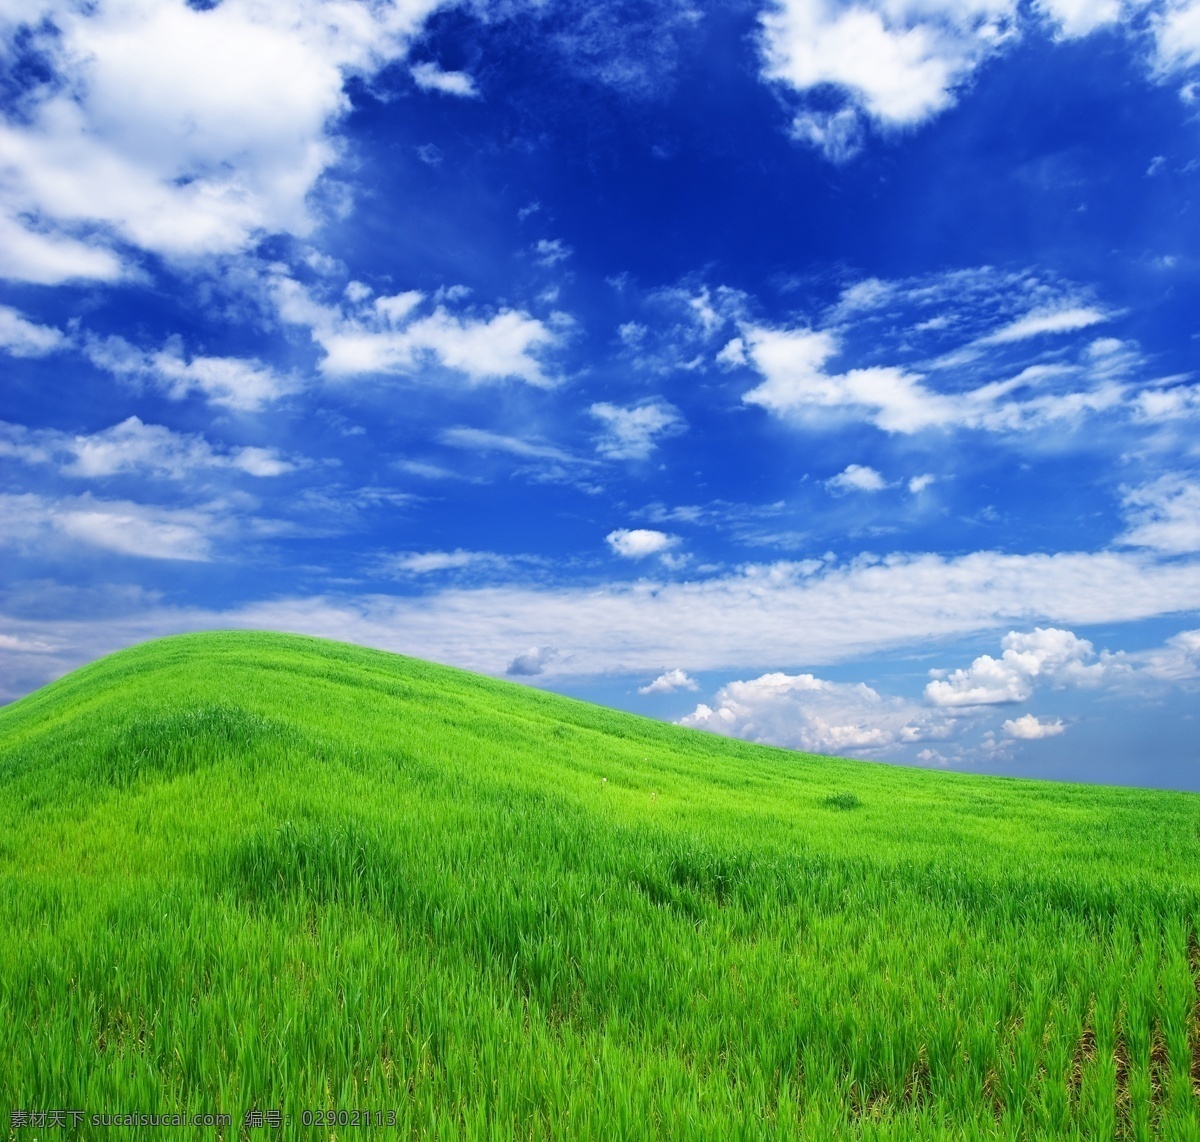 小山坡 背景 绿色 蓝天白云 绿草 风景大图 生物世界 花草